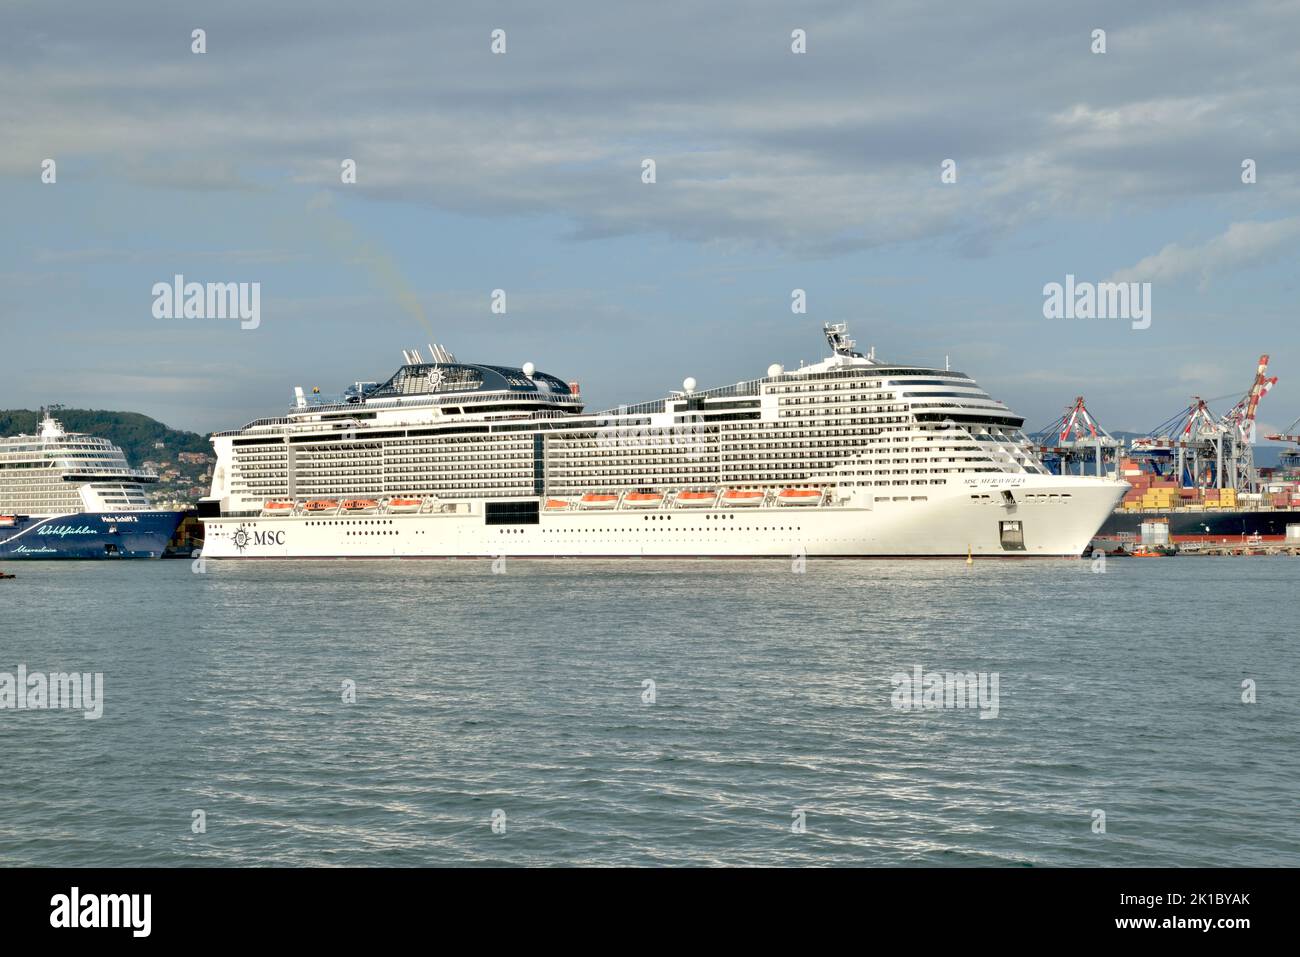 the MSC Meraviglia moored in the port of la spezia Stock Photo